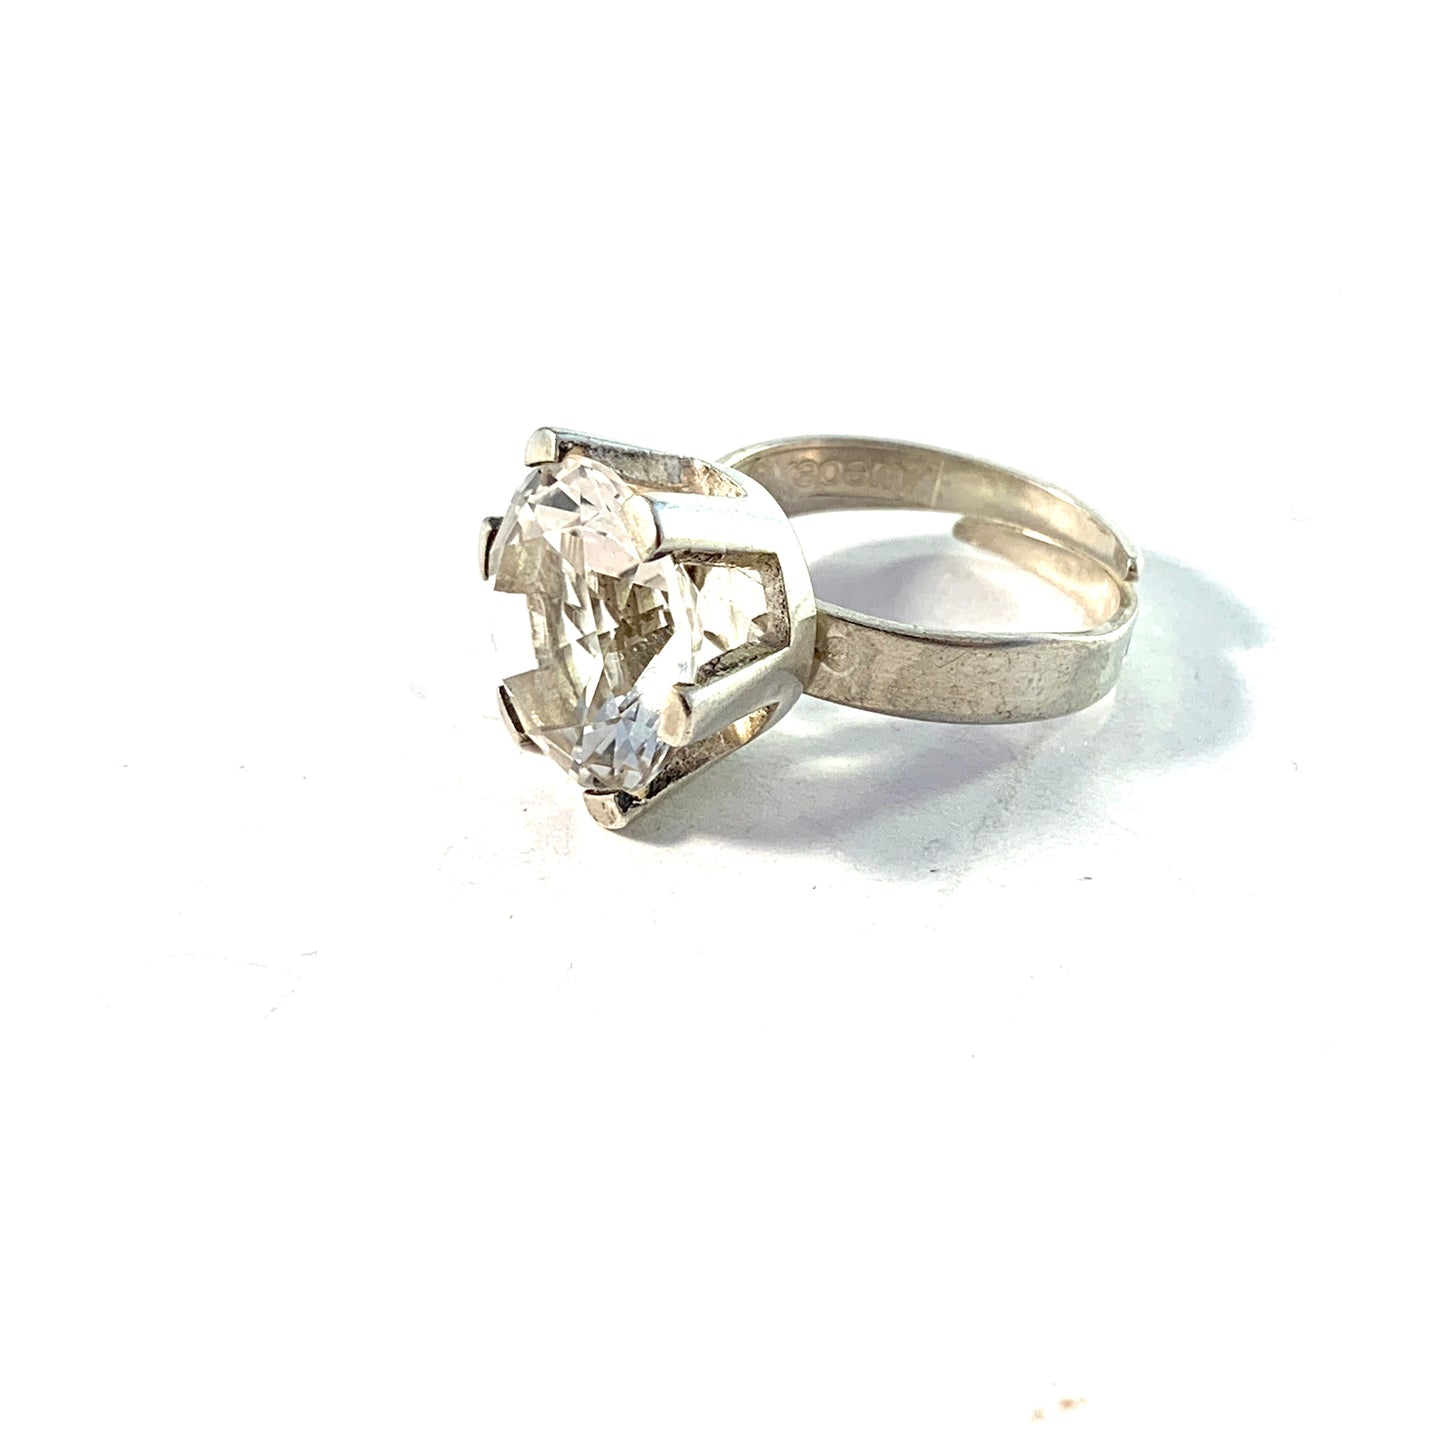 Bengt Hallberg, Sweden 1975. Vintage Sterling Silver Rock Crystal Ring. Adjustable Size.